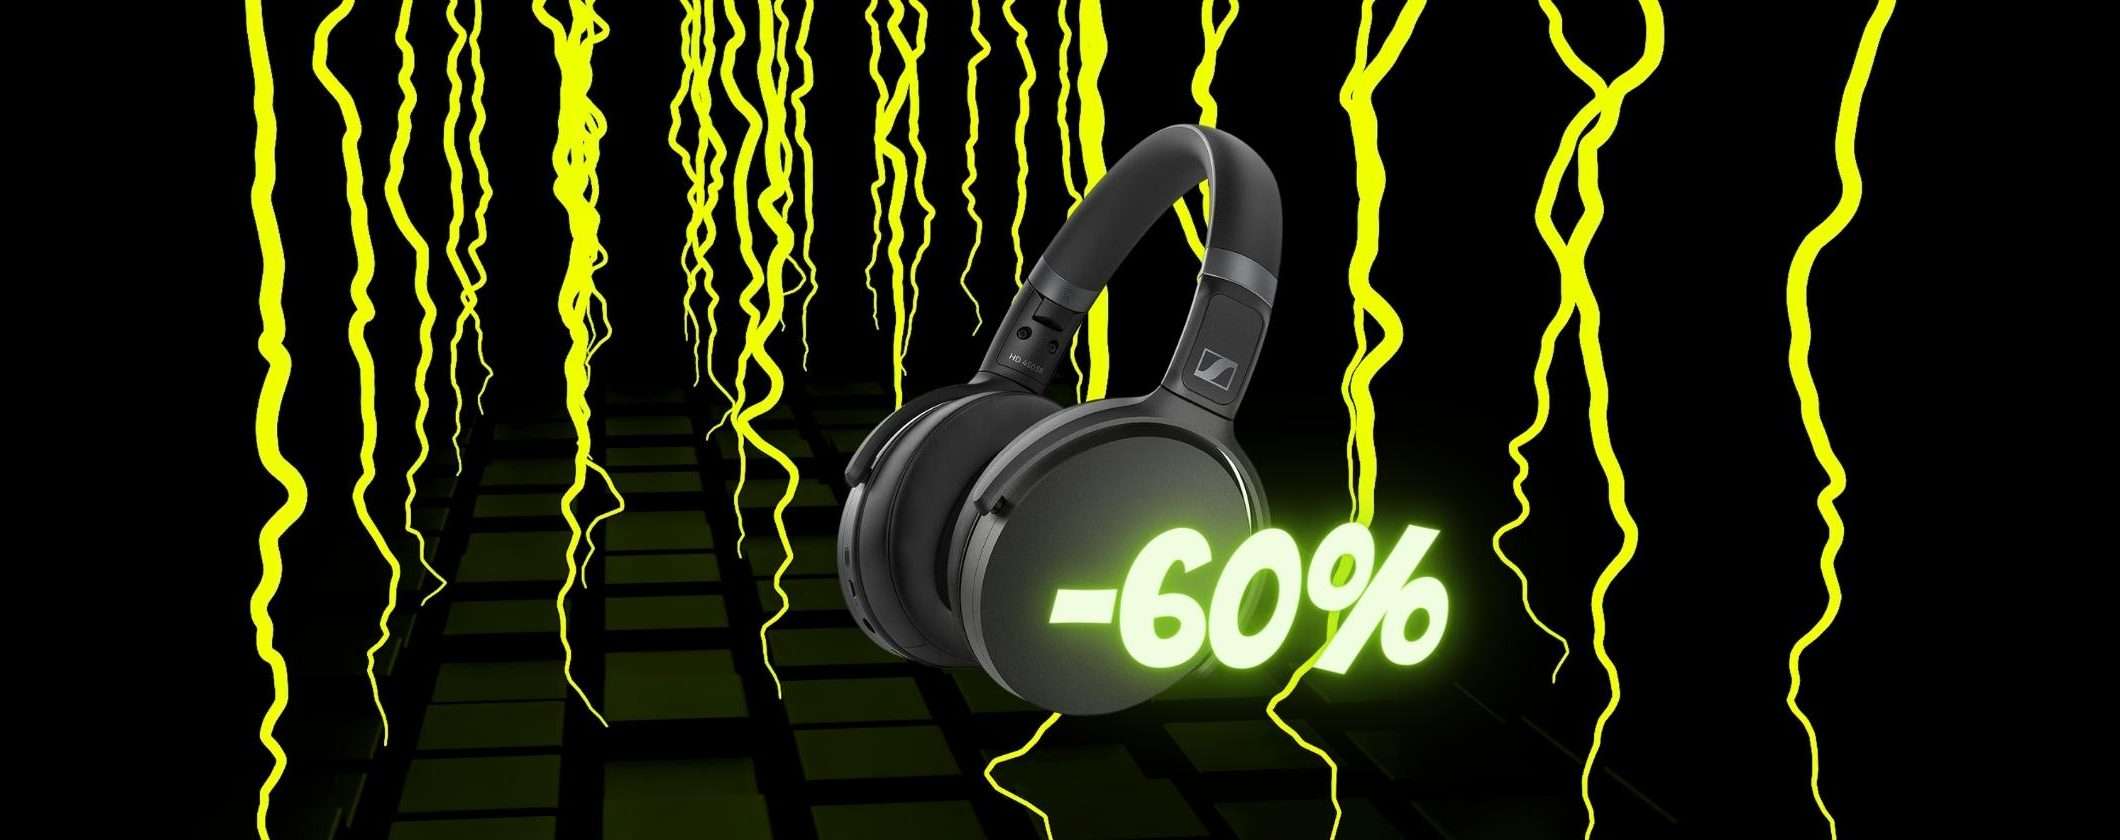 Cuffie Wireless Sennheiser: tutt'altro suono a questo prezzo (-60%)